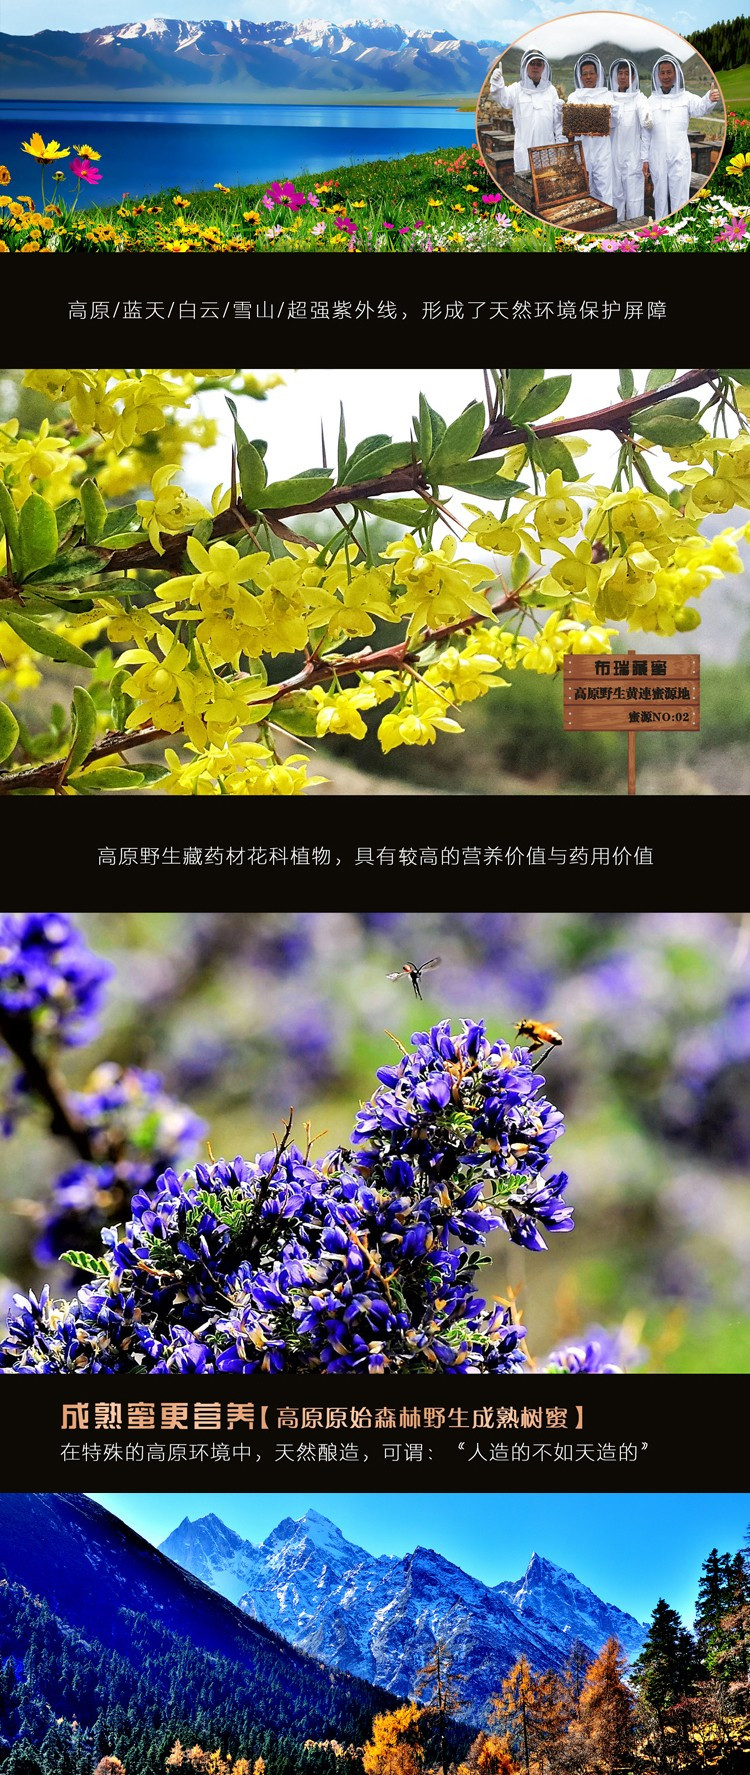 布瑞藏蜜 林芝特产 布瑞藏蜜 野生百花蜂蜜 250g 250g